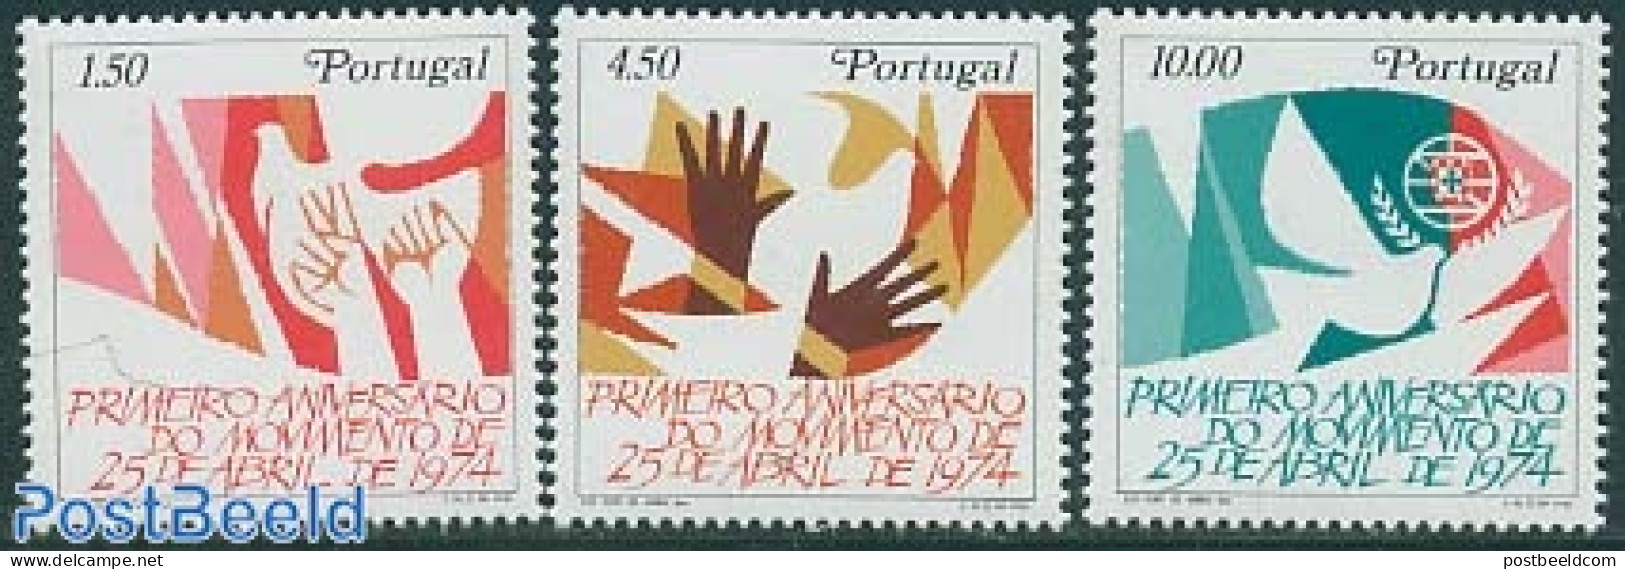 Portugal 1975 Revolution Anniversary 3v, Mint NH, History - History - Ongebruikt